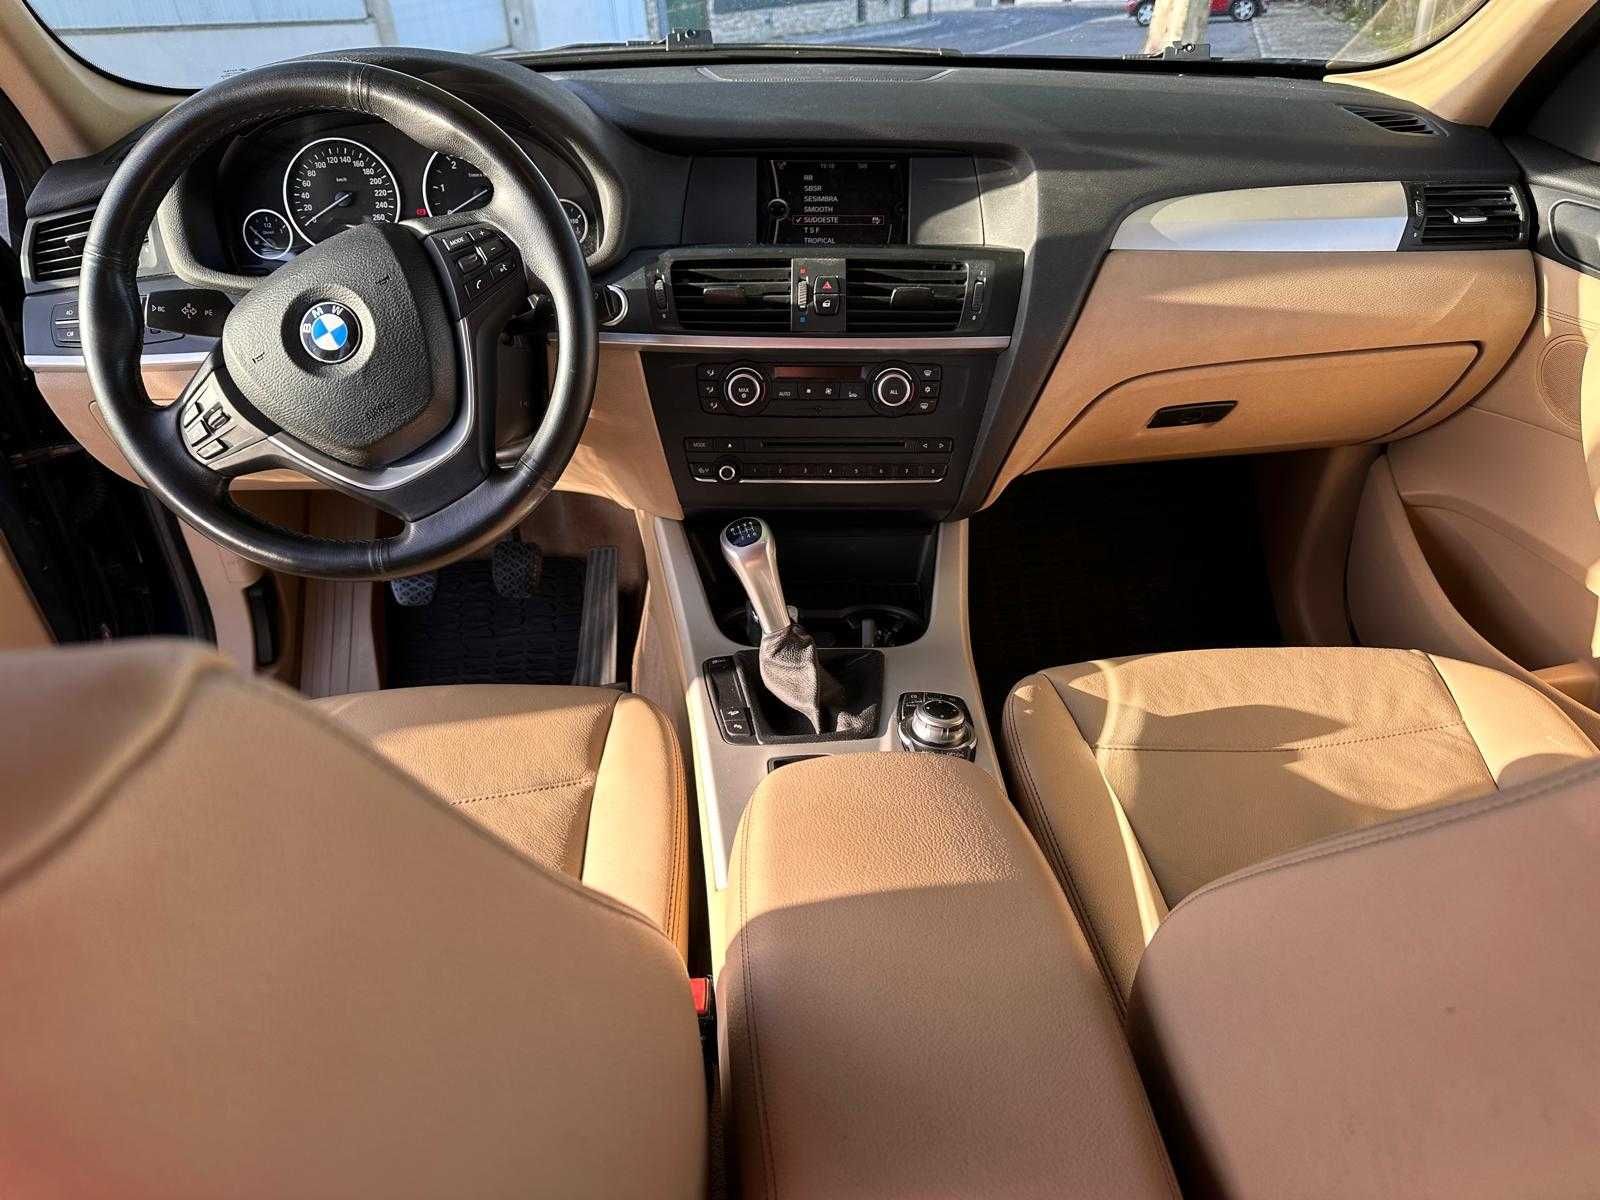 BMW X3 em excelente estado